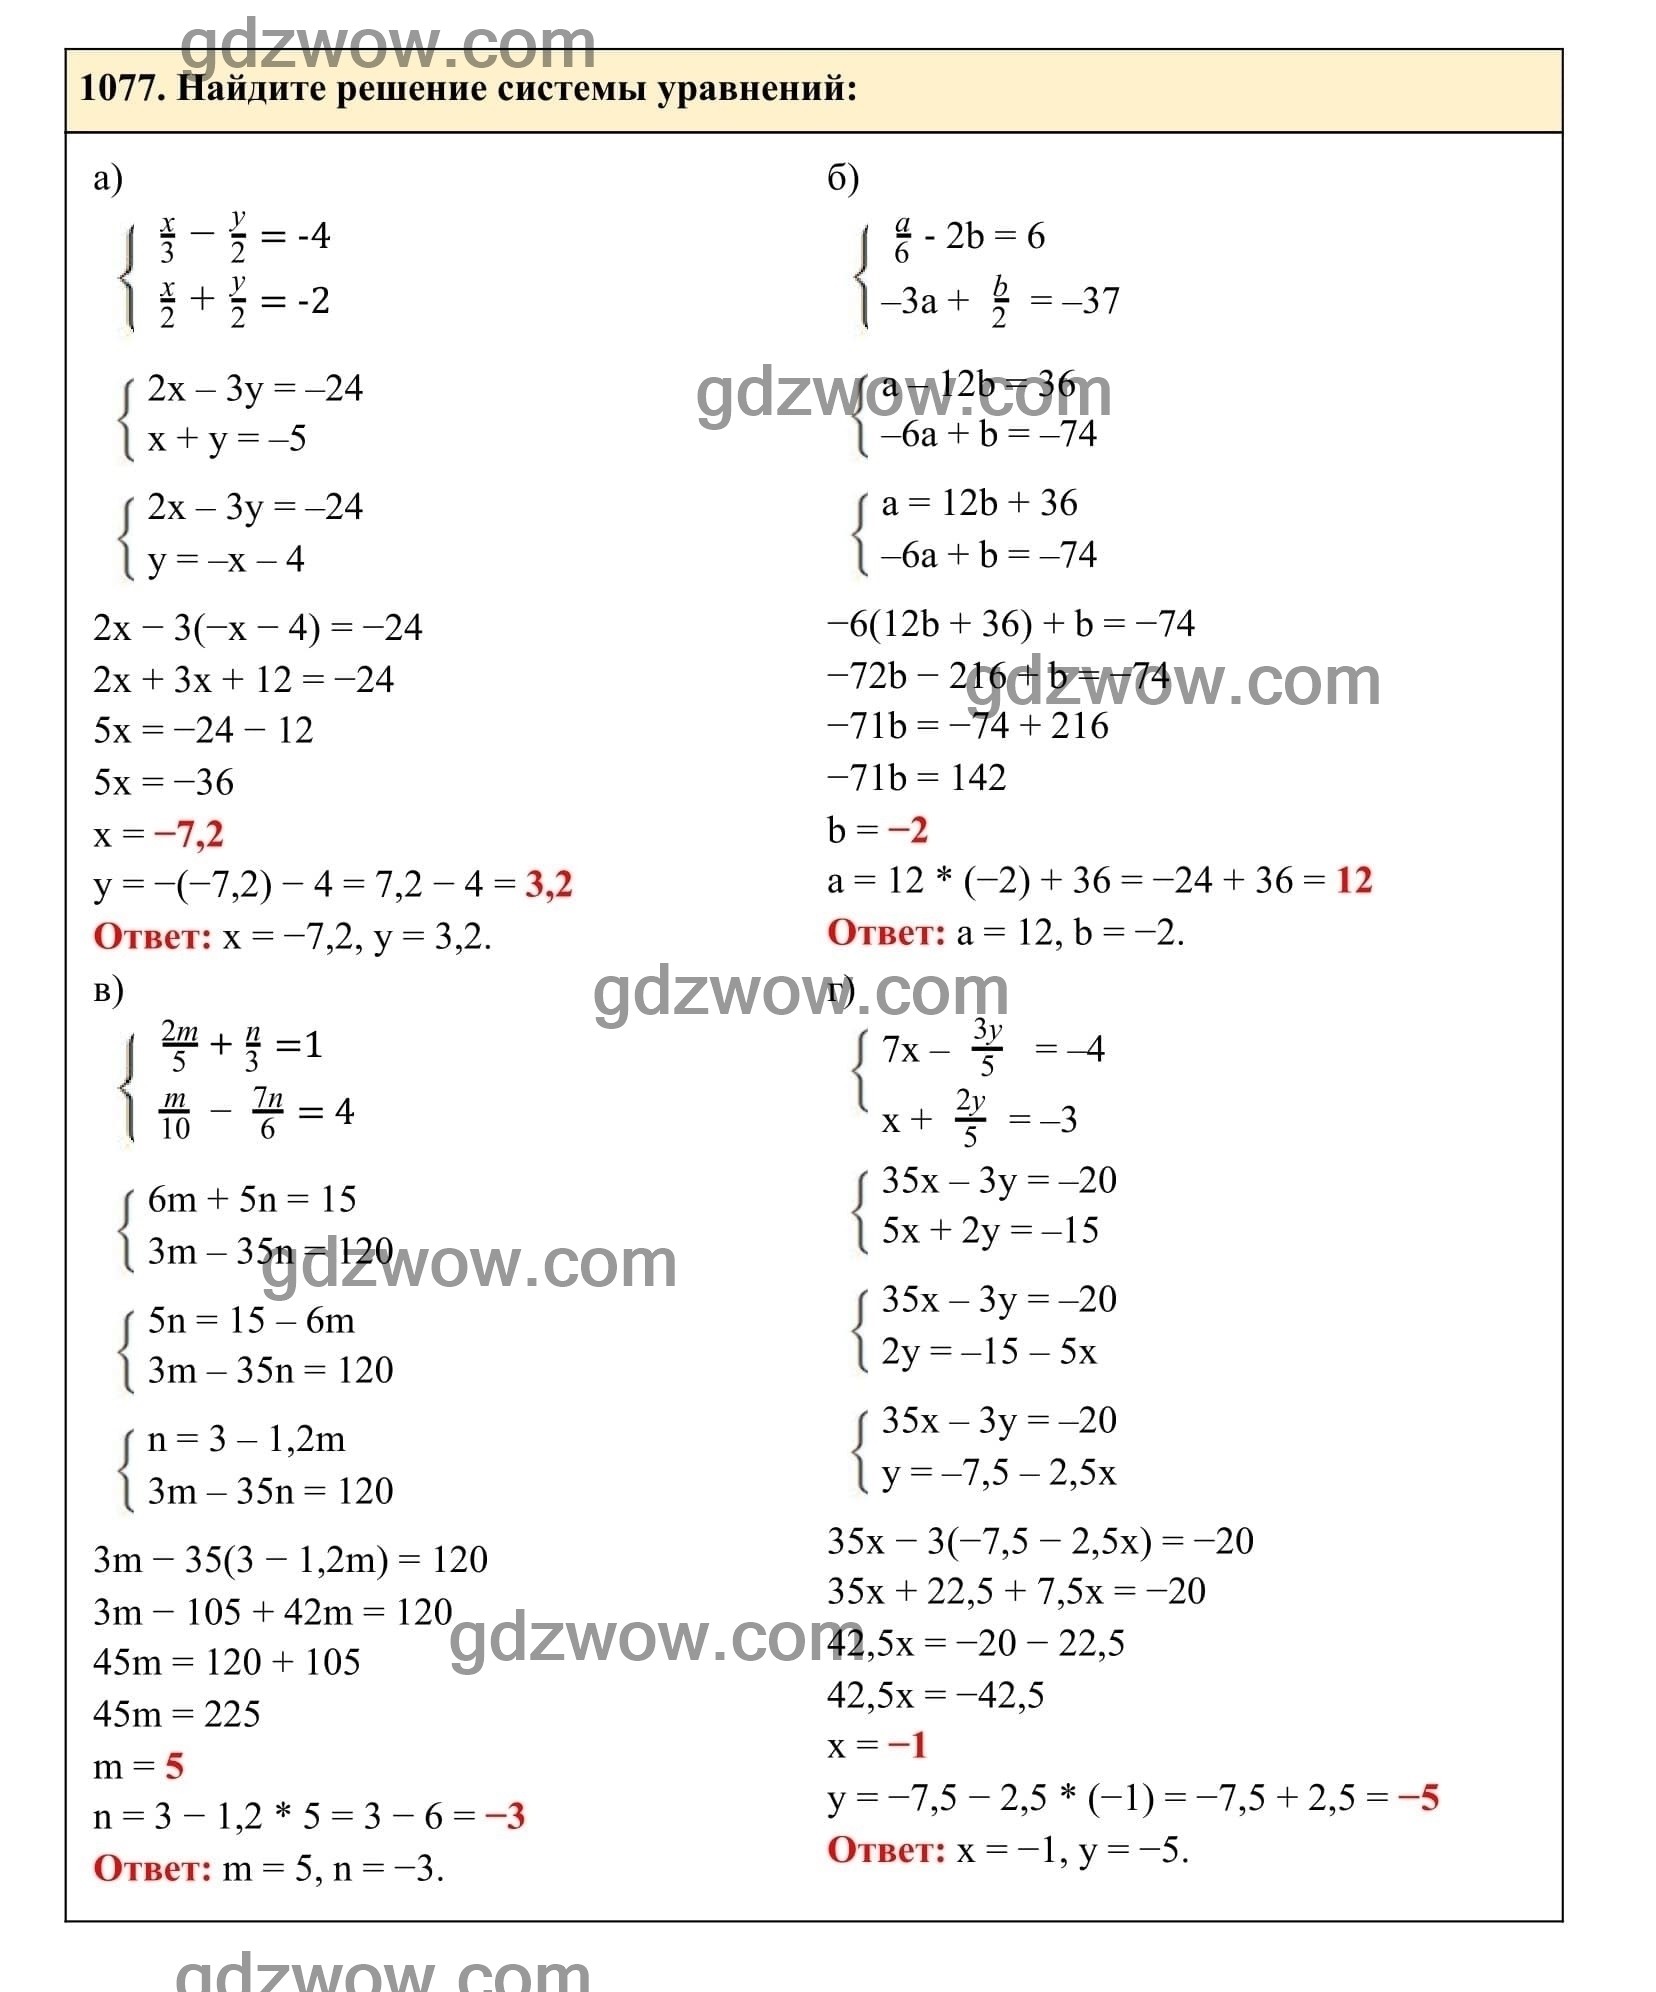 Упражнение 1077 - ГДЗ по Алгебре 7 класс Учебник Макарычев (решебник) - GDZwow